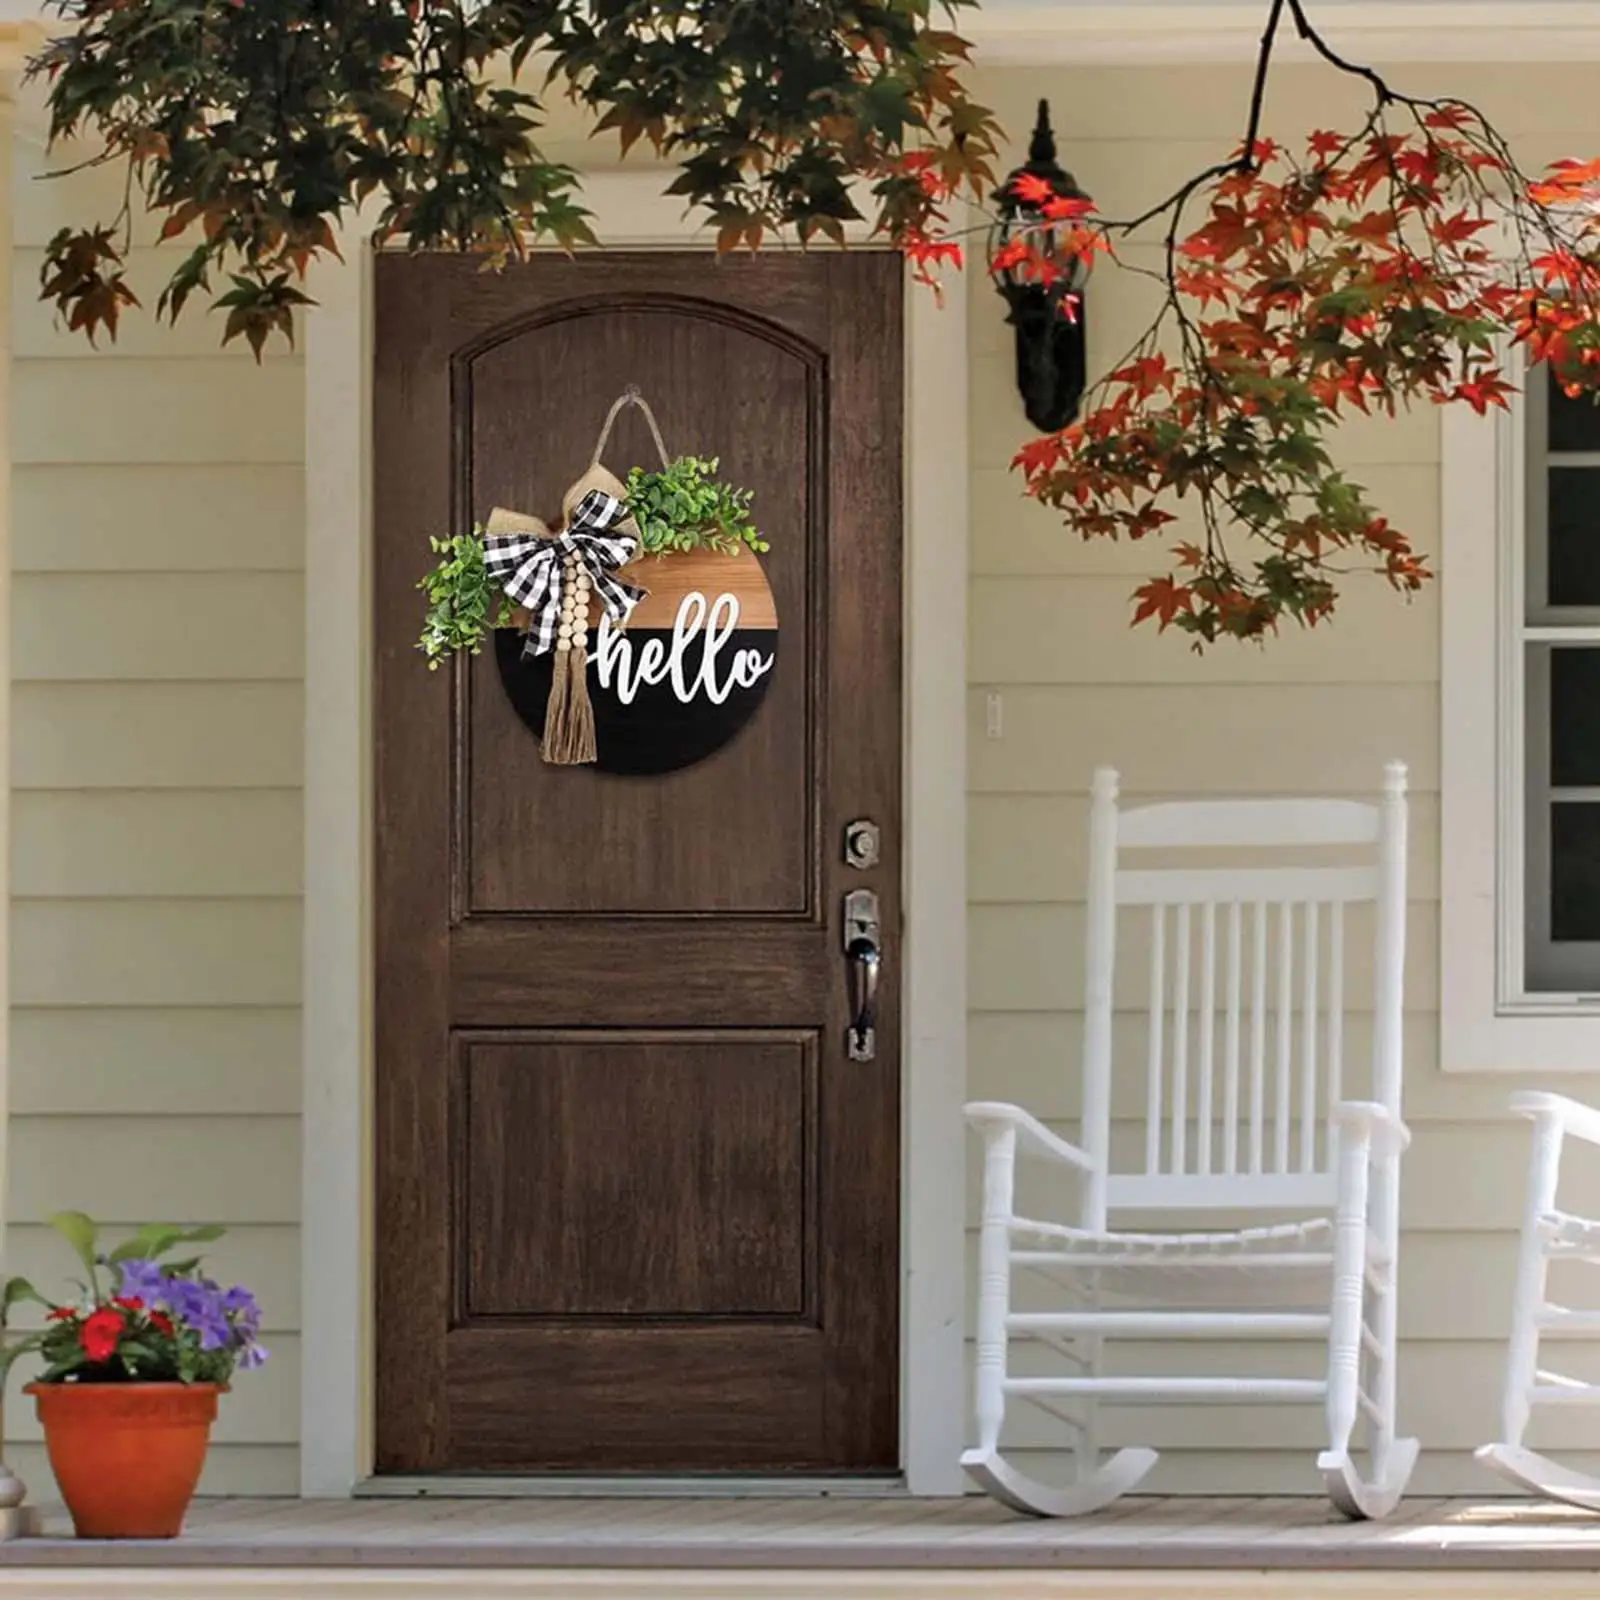 Door Signs Round Farmhouse Flower Wreath for Window Photo Props Party Indoor Front Door